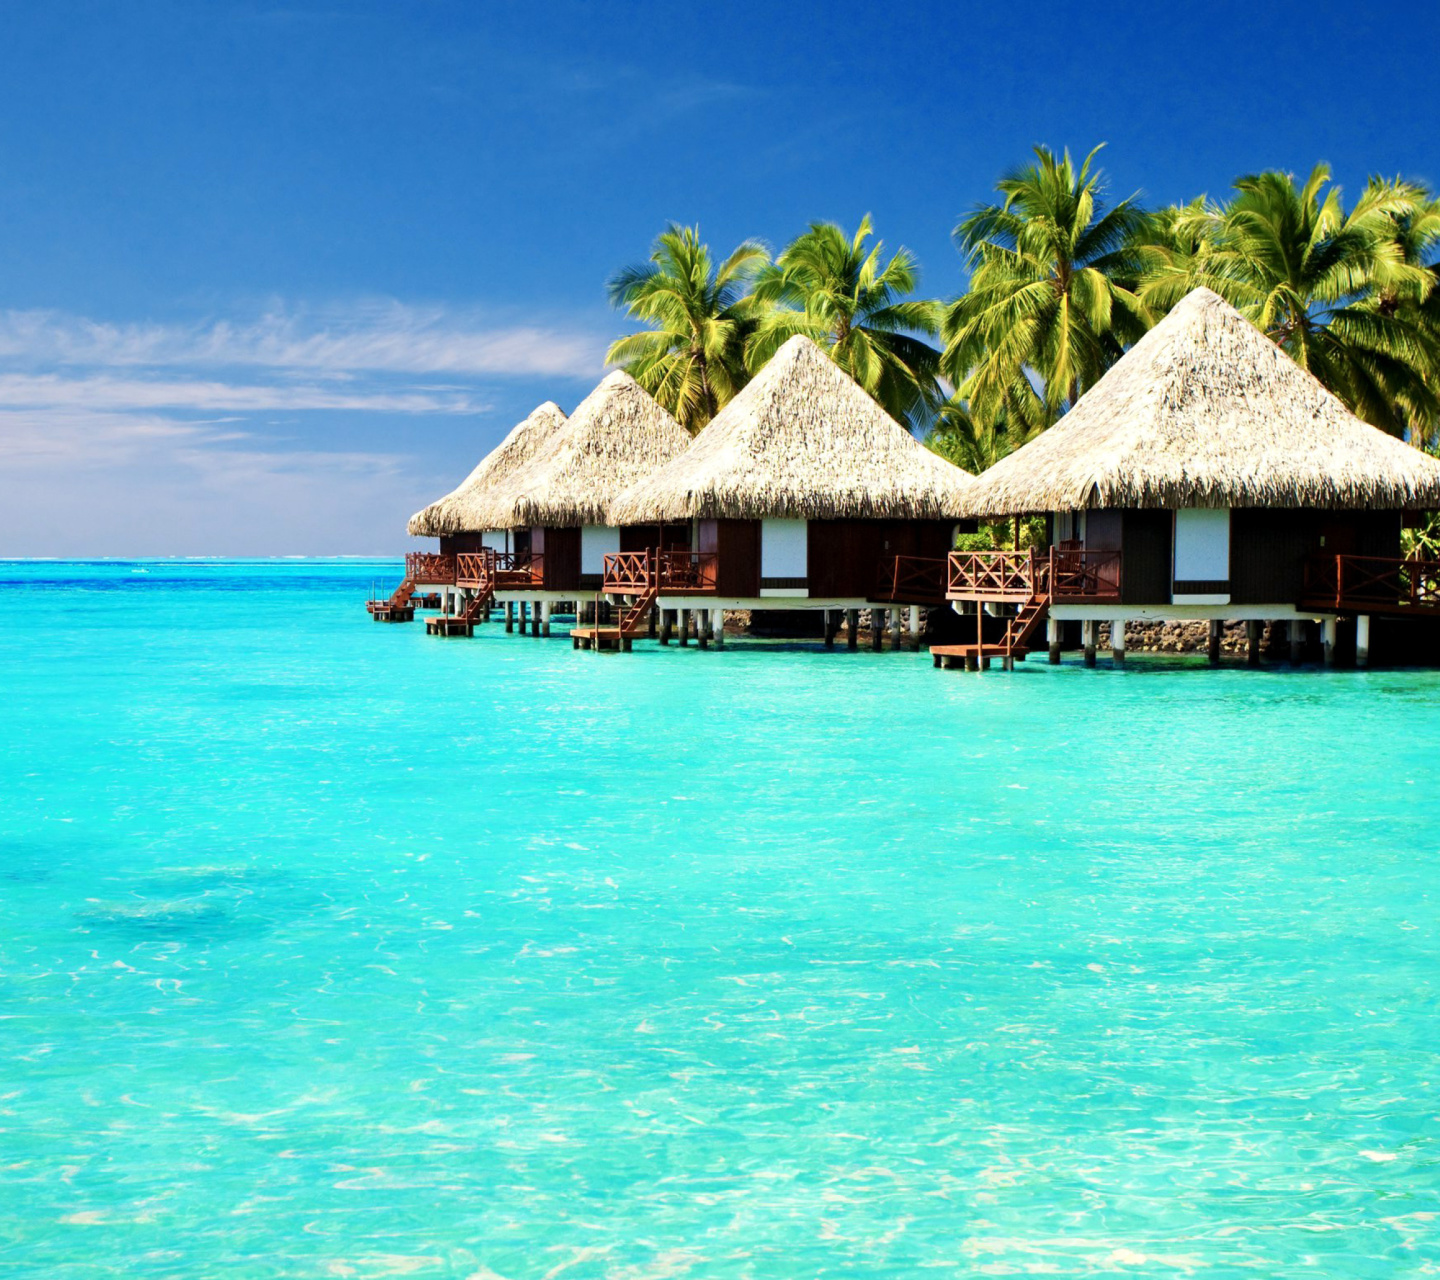 Maldives Islands best Destination for Honeymoon screenshot #1 1440x1280